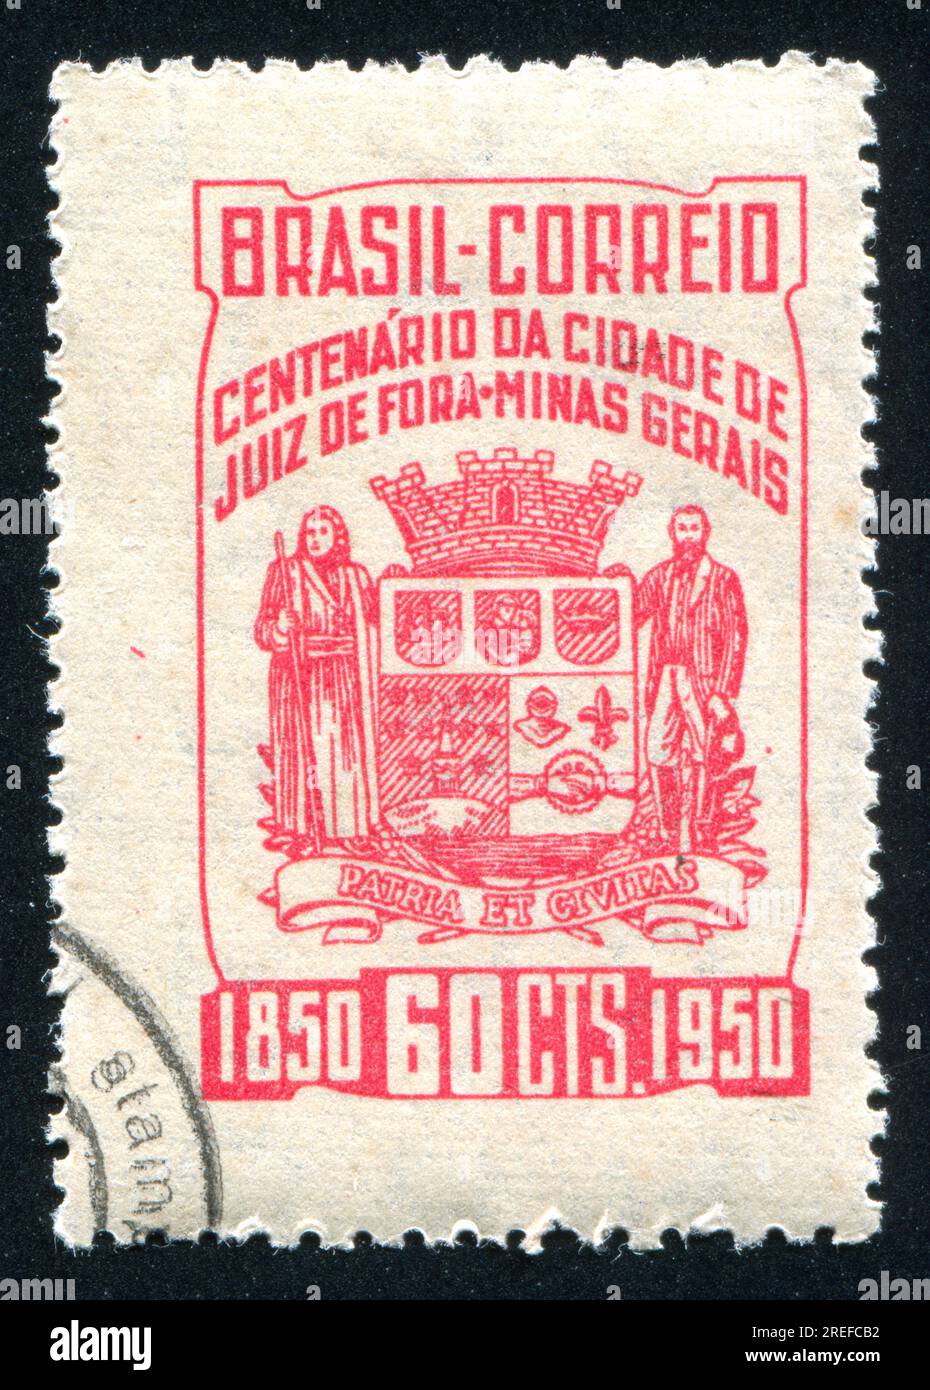 https://c8.alamy.com/comp/2REFCB2/brazil-circa-1950-stamp-printed-by-brazil-shows-arms-of-juiz-de-fora-circa-1950-2REFCB2.jpg